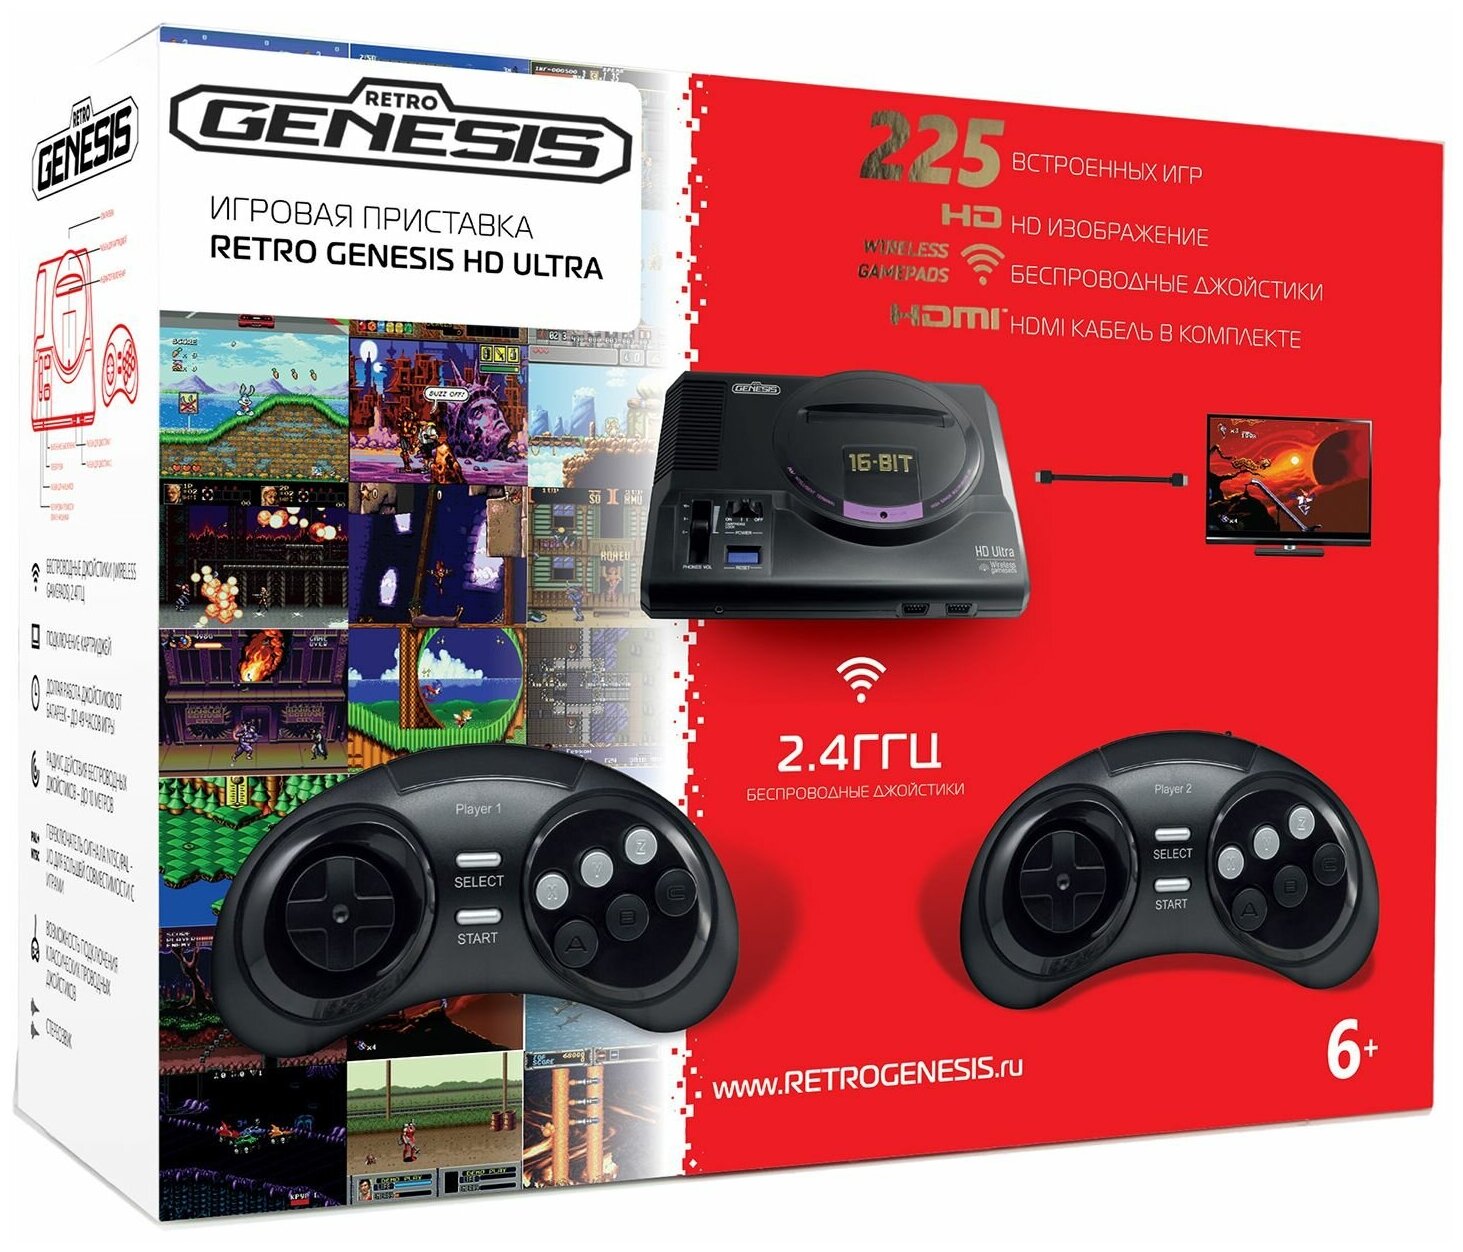 Игровая консоль SEGA RETRO GENESIS HD ULTRA (225 игр, 2 беспроводных джойстика, 2.4ГГц , HDMI, AV)